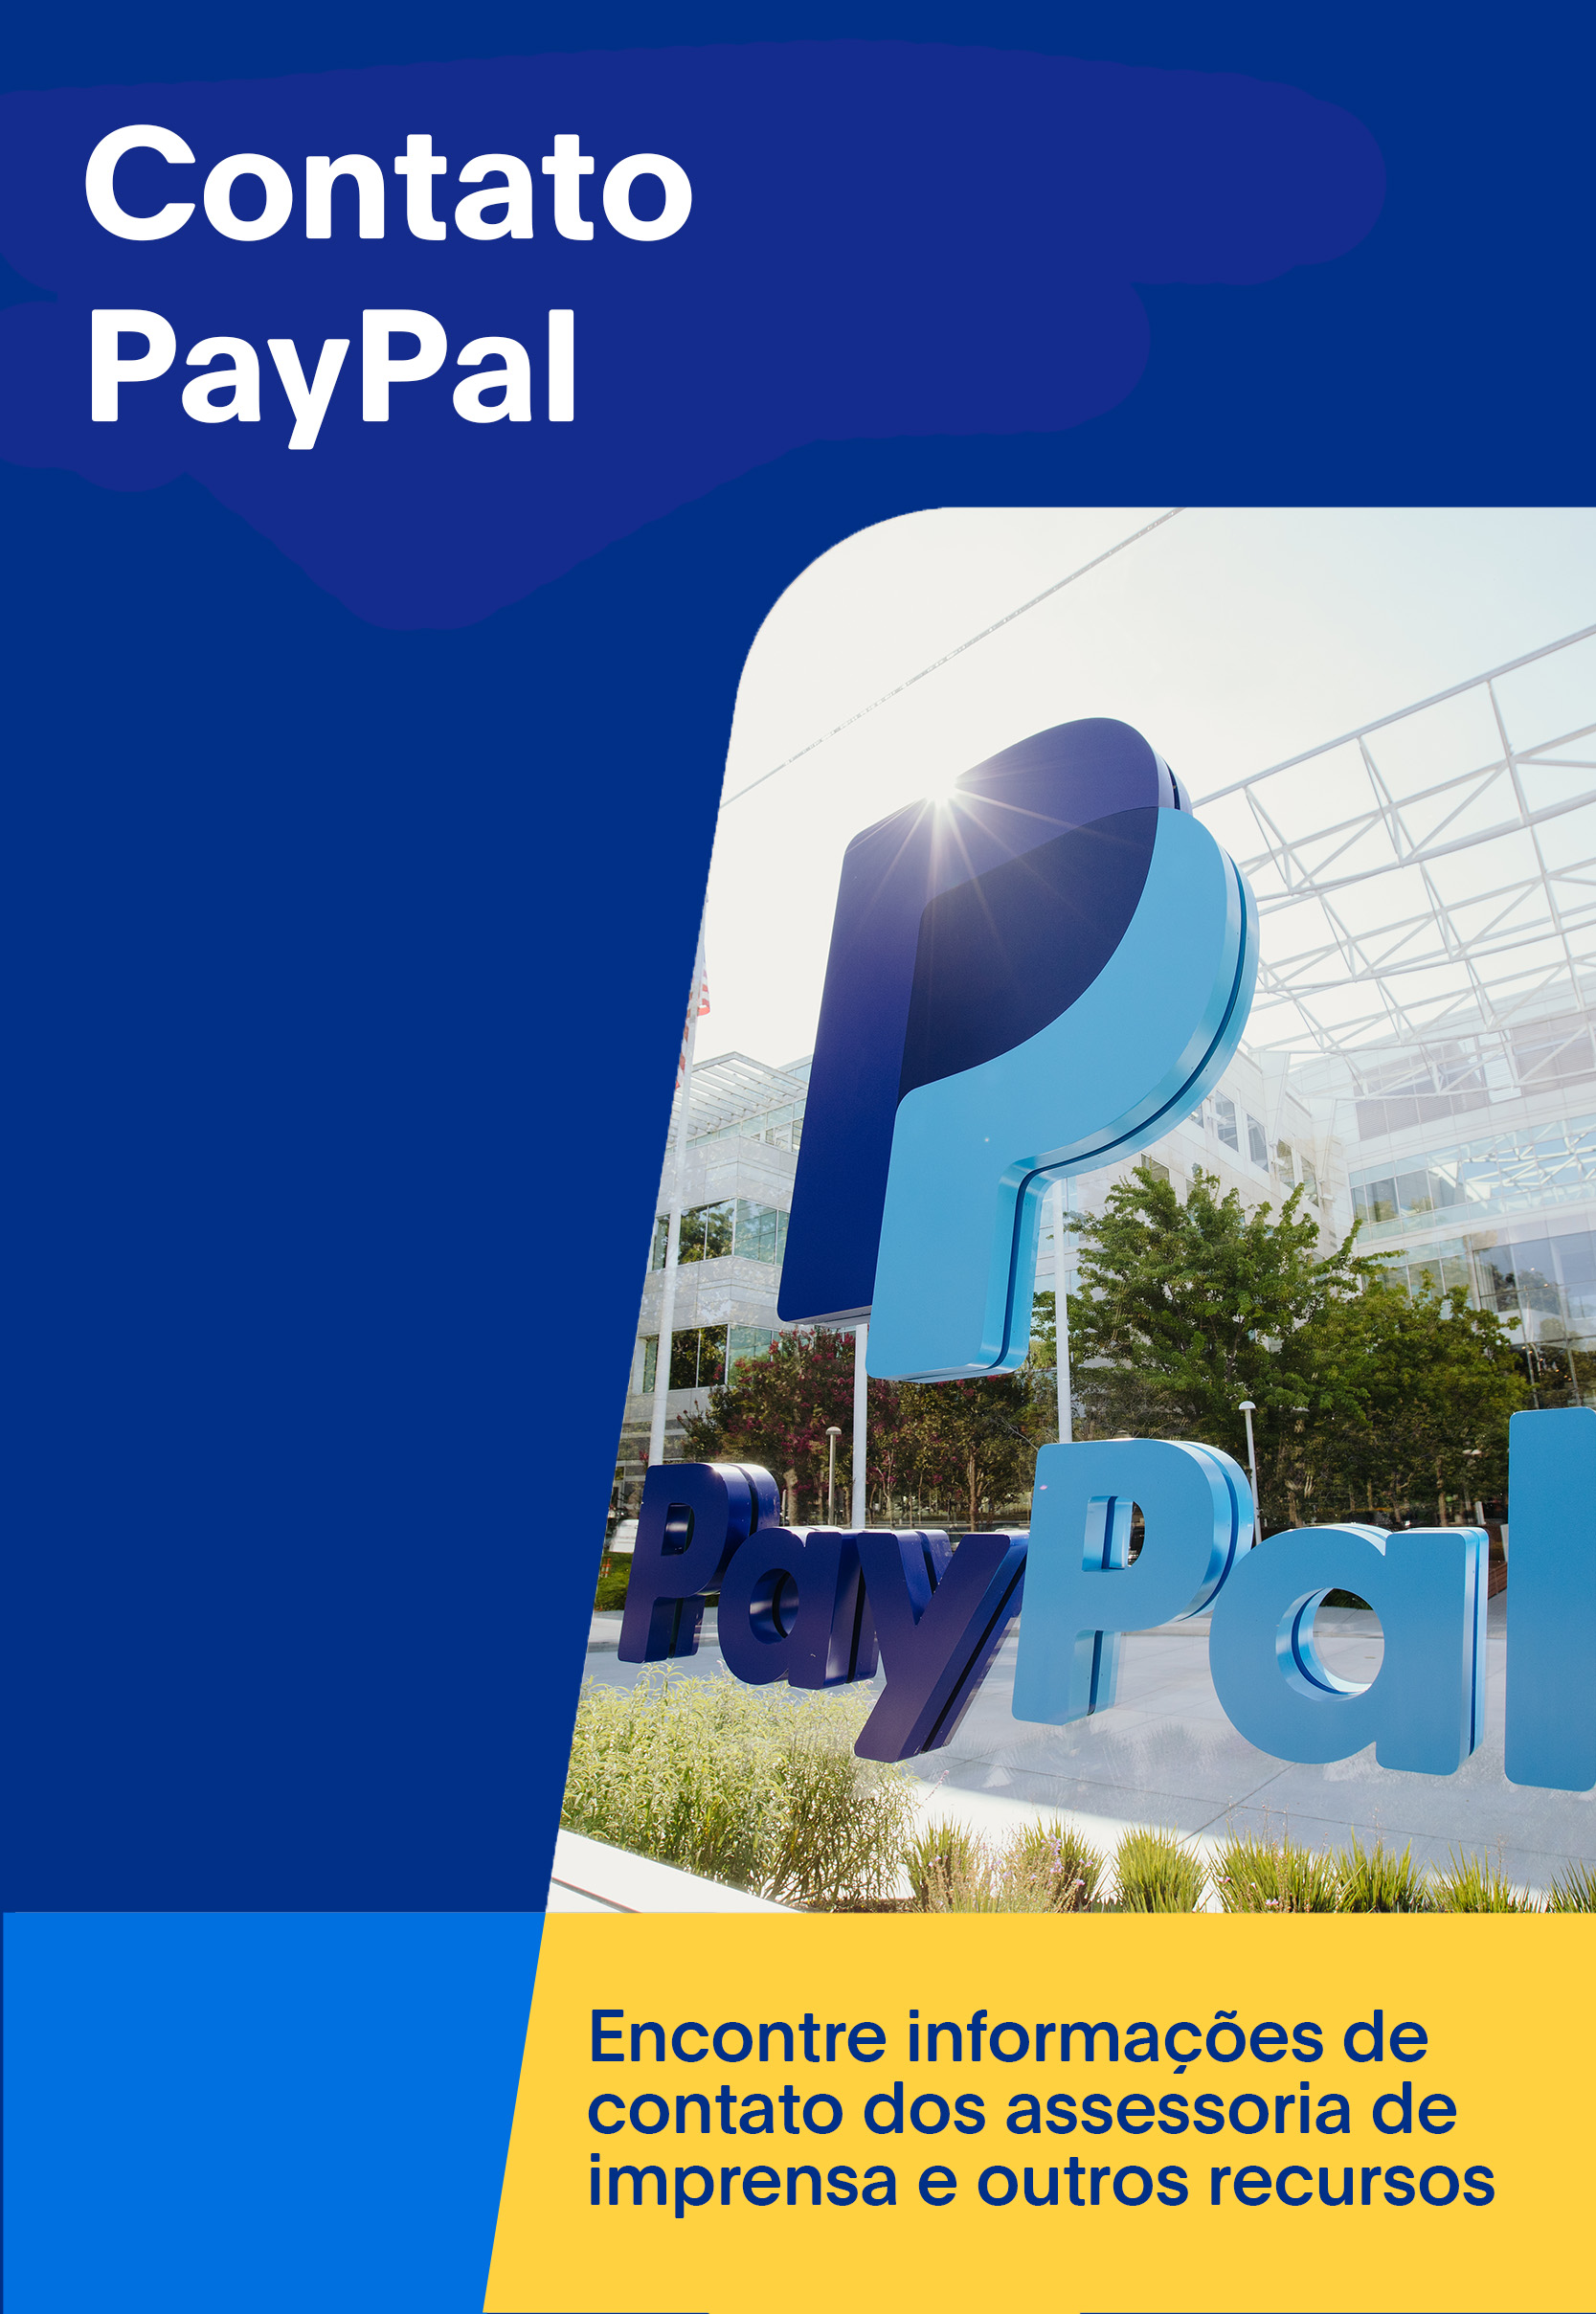 Contato PayPal: Abrir em uma nova janela